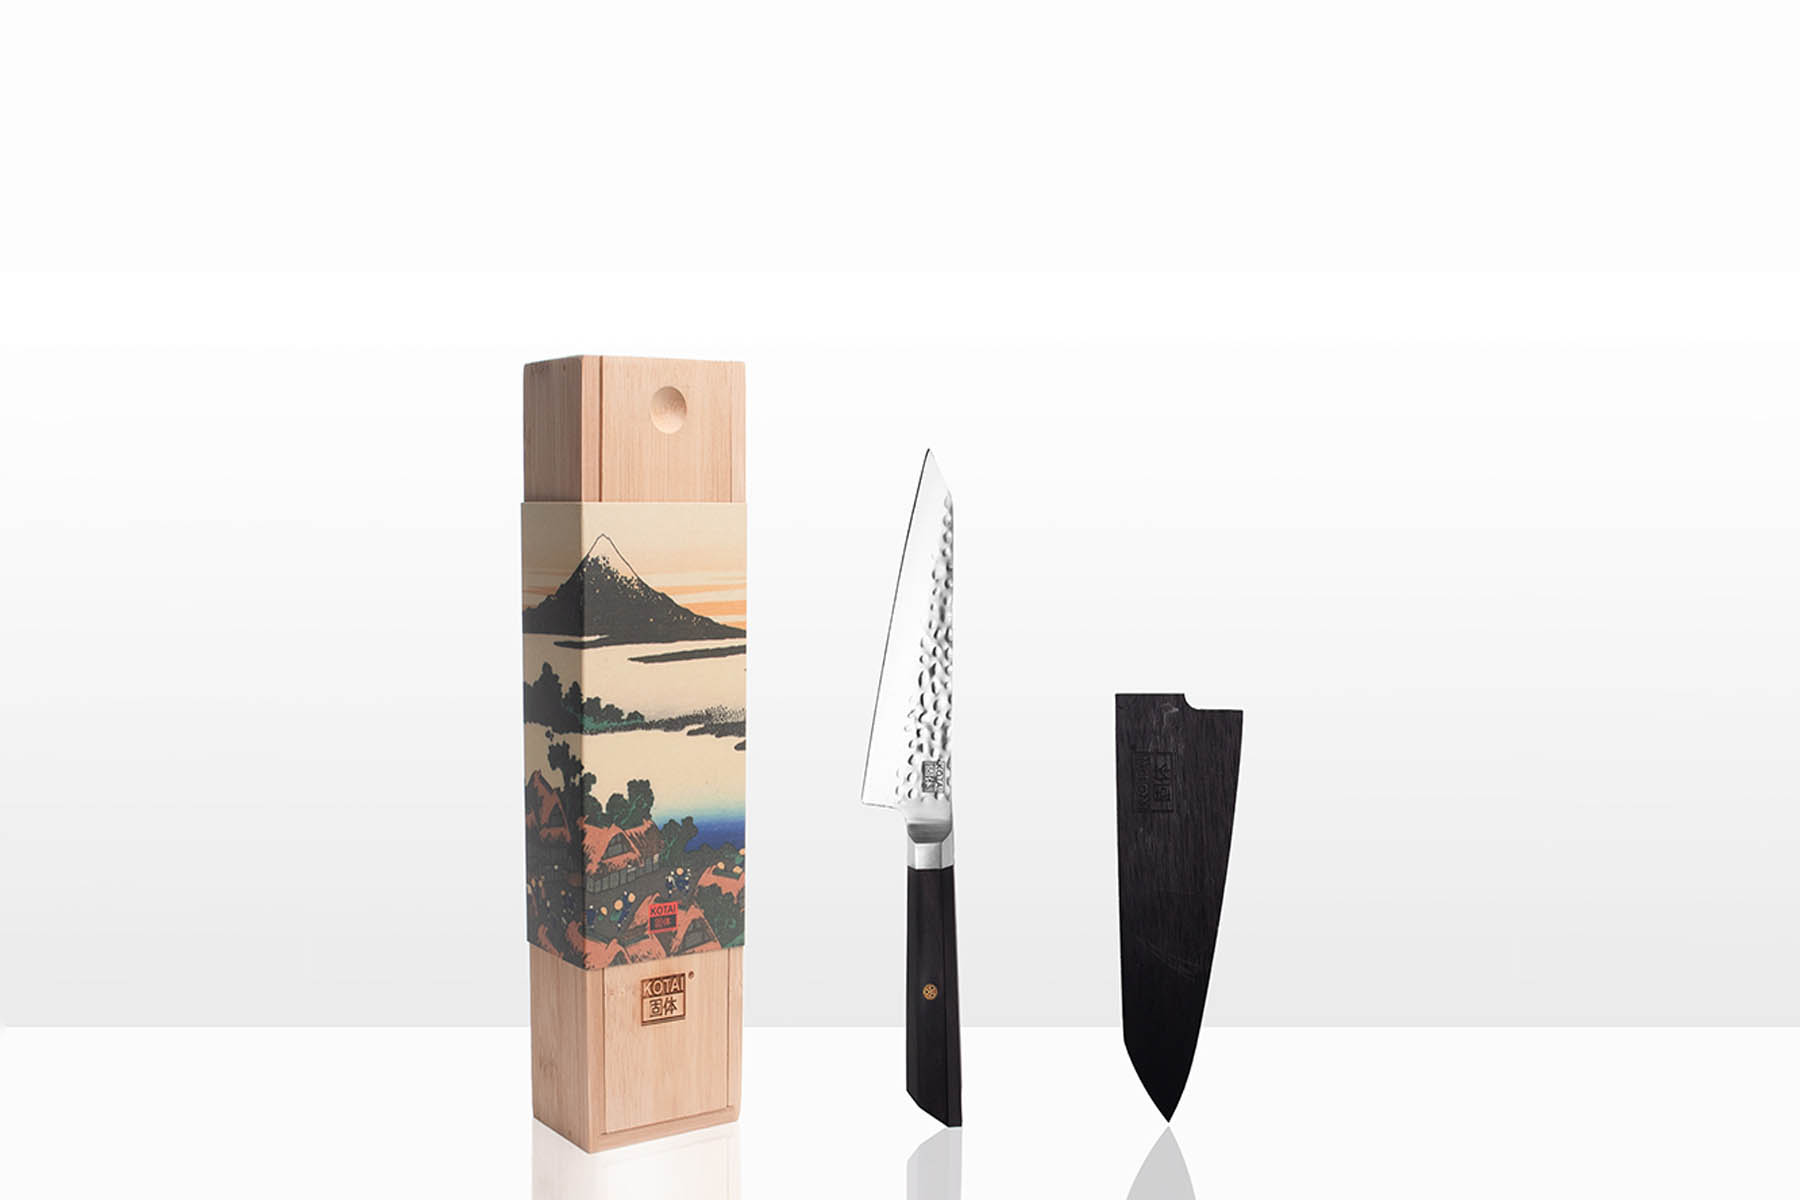 Couteau de cuisine Kotai - Couteau petty 13,5 cm ébène